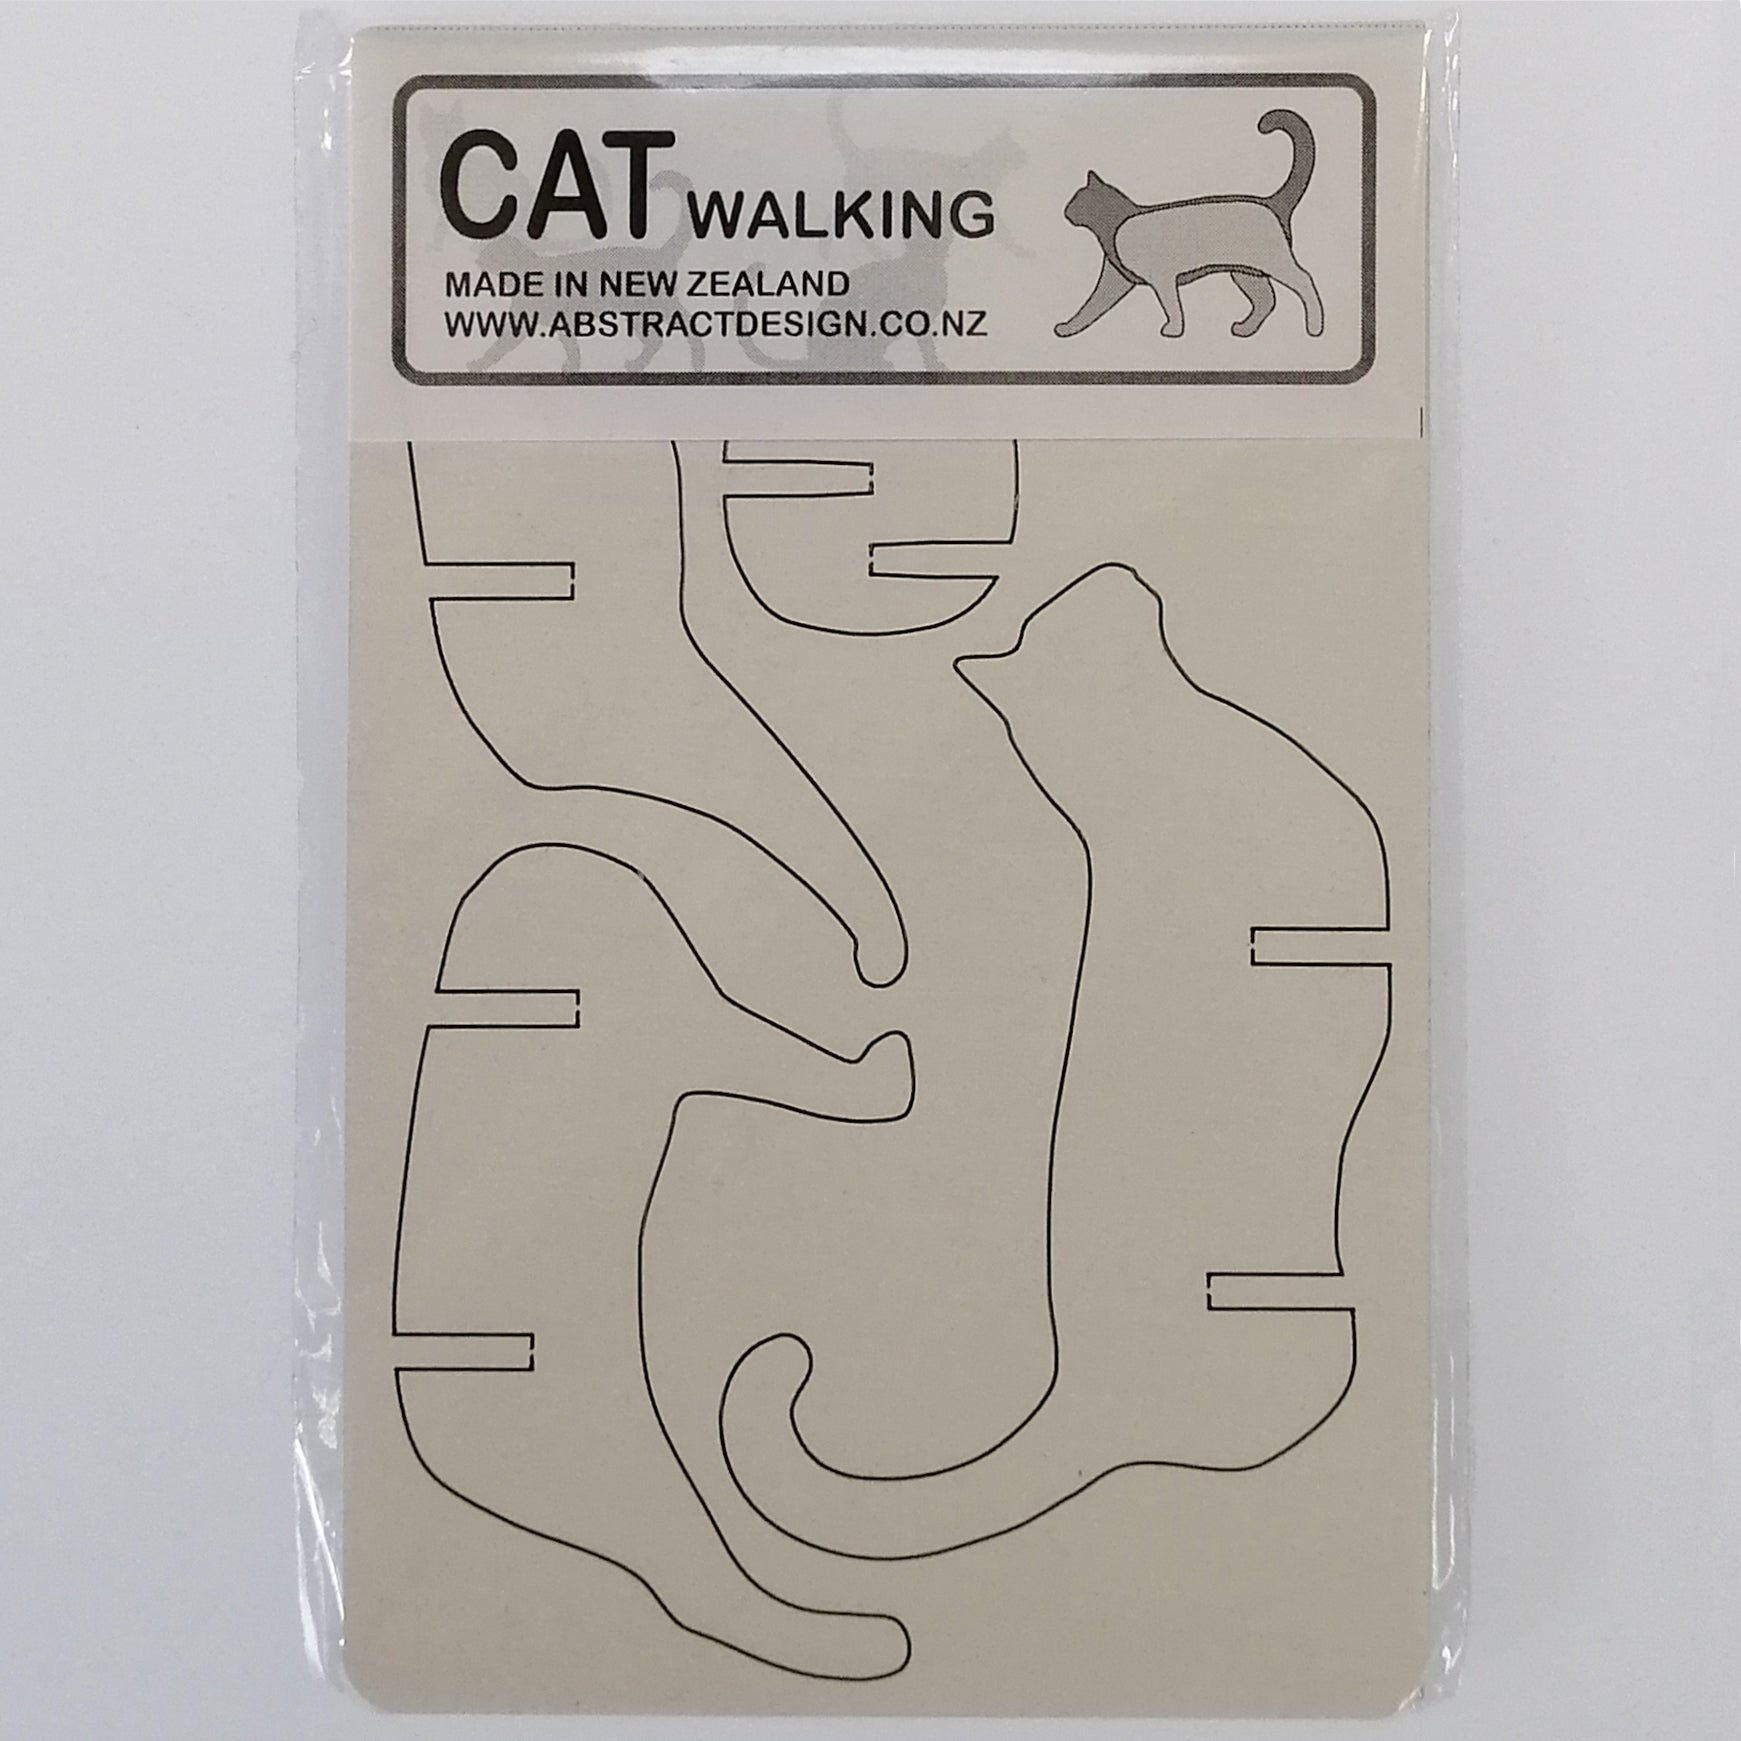 Flat-pack Kitset Wooden Model - Cat Walking - White